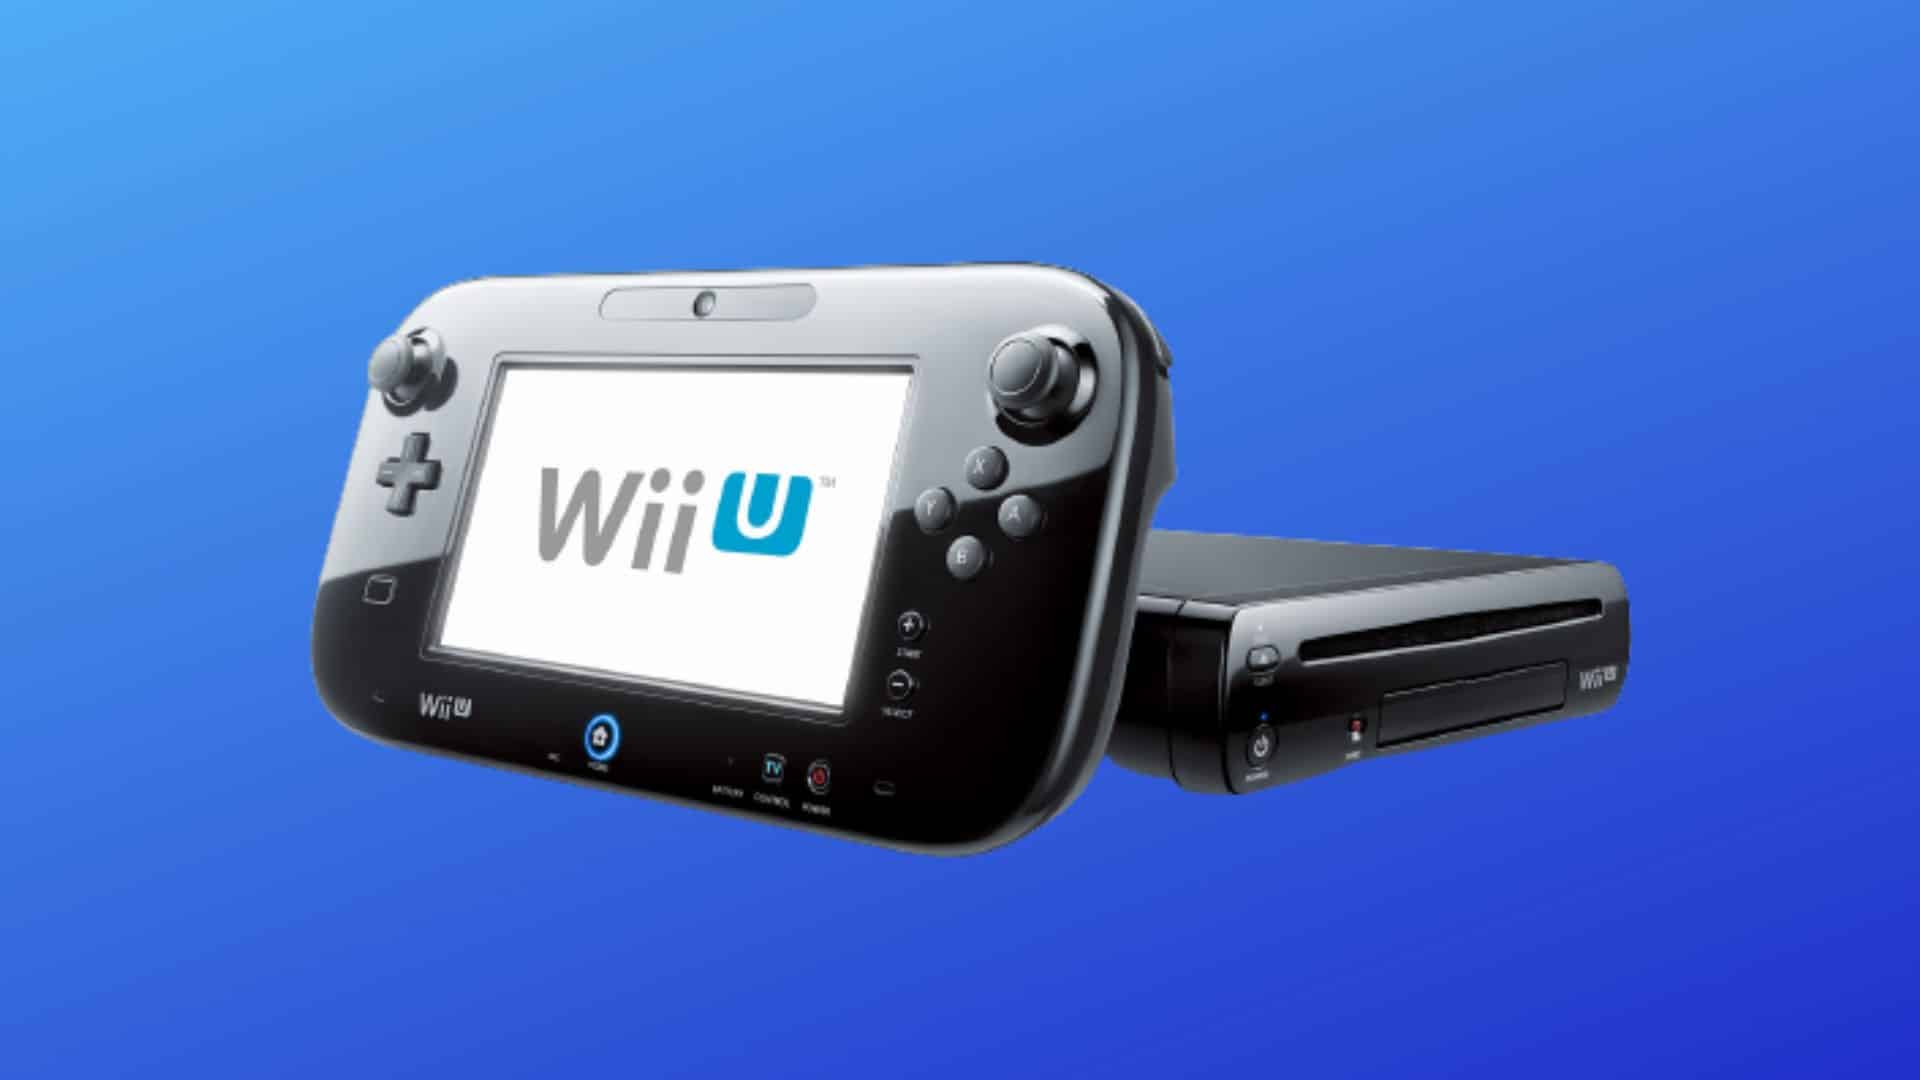 Wiiu Console setup